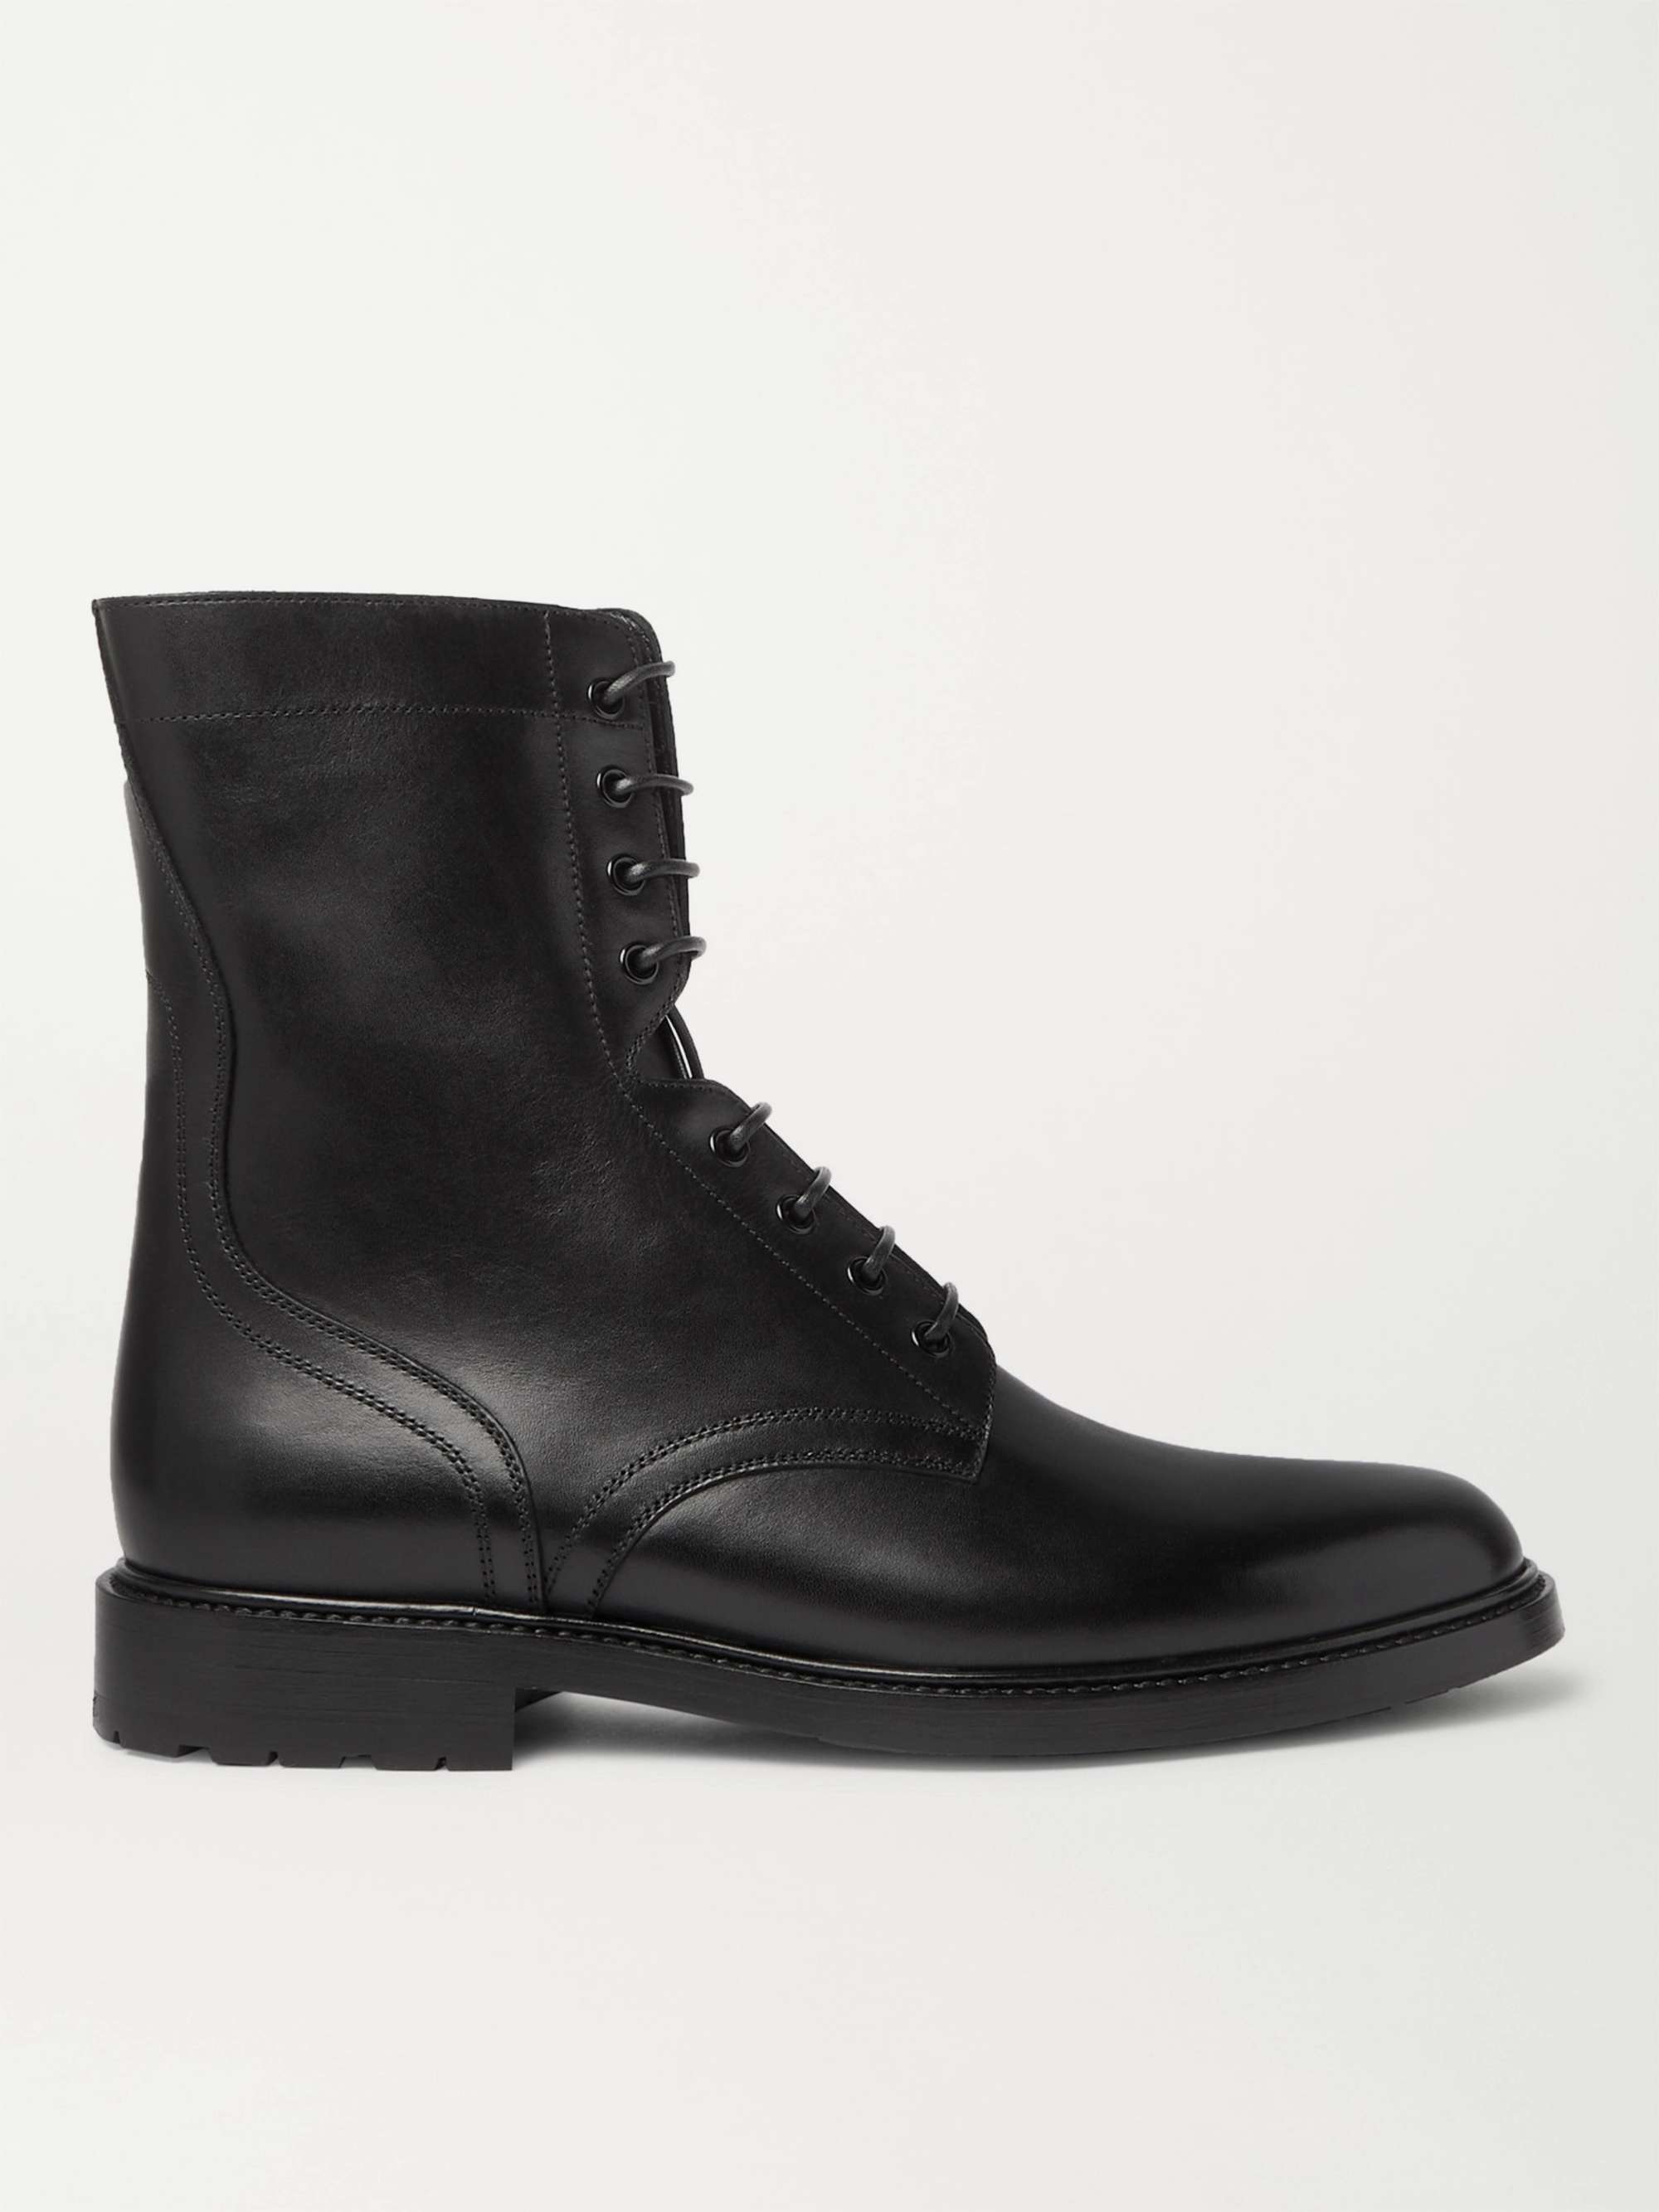 CELINE HOMME Leather Boots for Men | MR PORTER